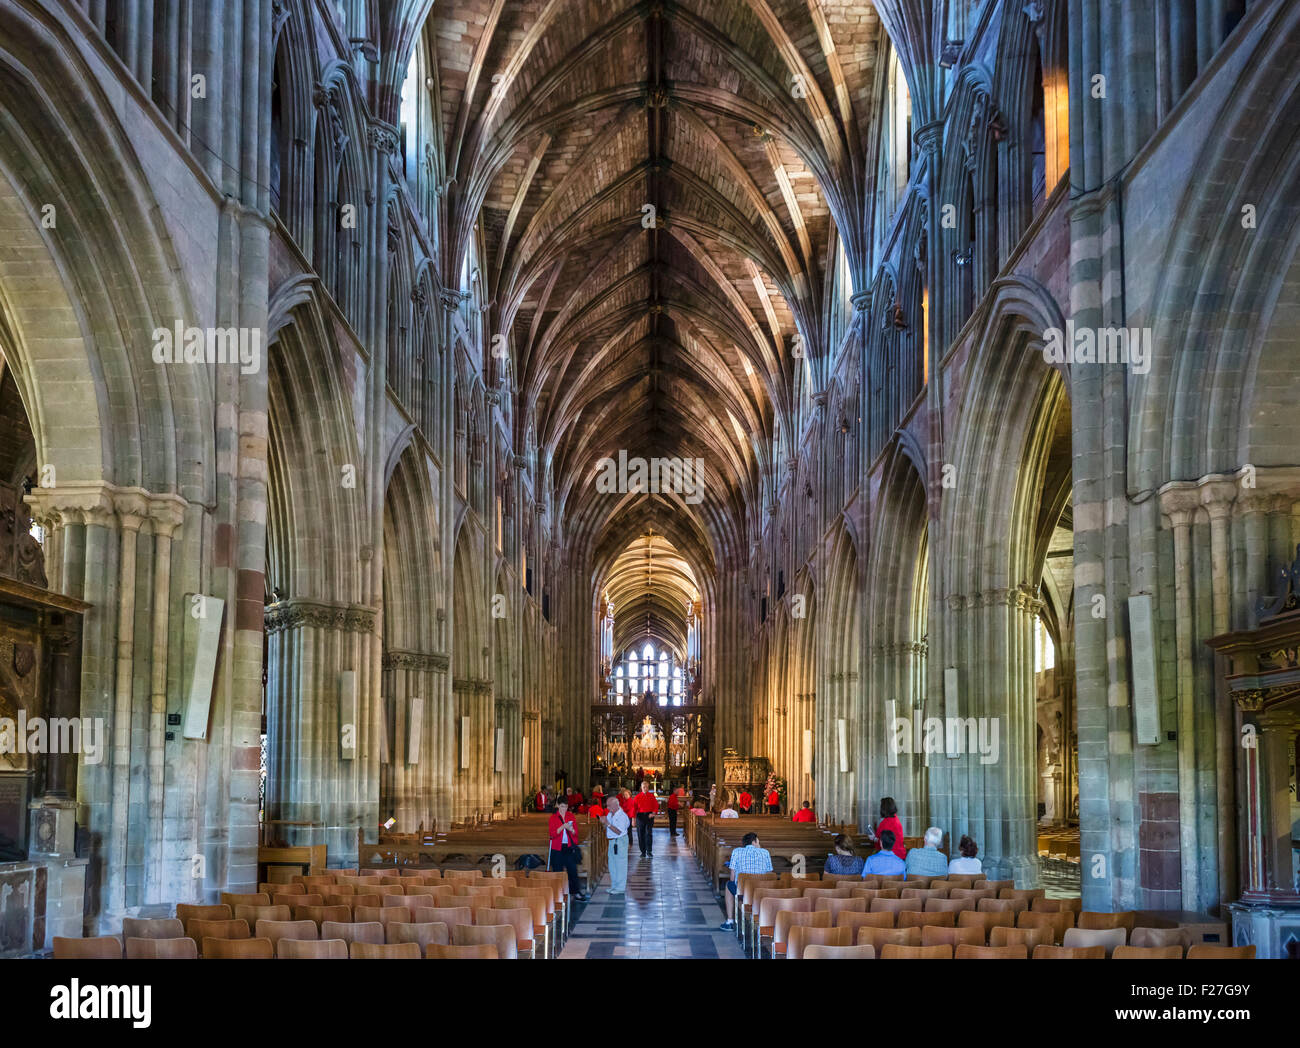 Das Hauptschiff der Kathedrale von Worcester, Worcester, Worcestershire, England, UK Stockfoto